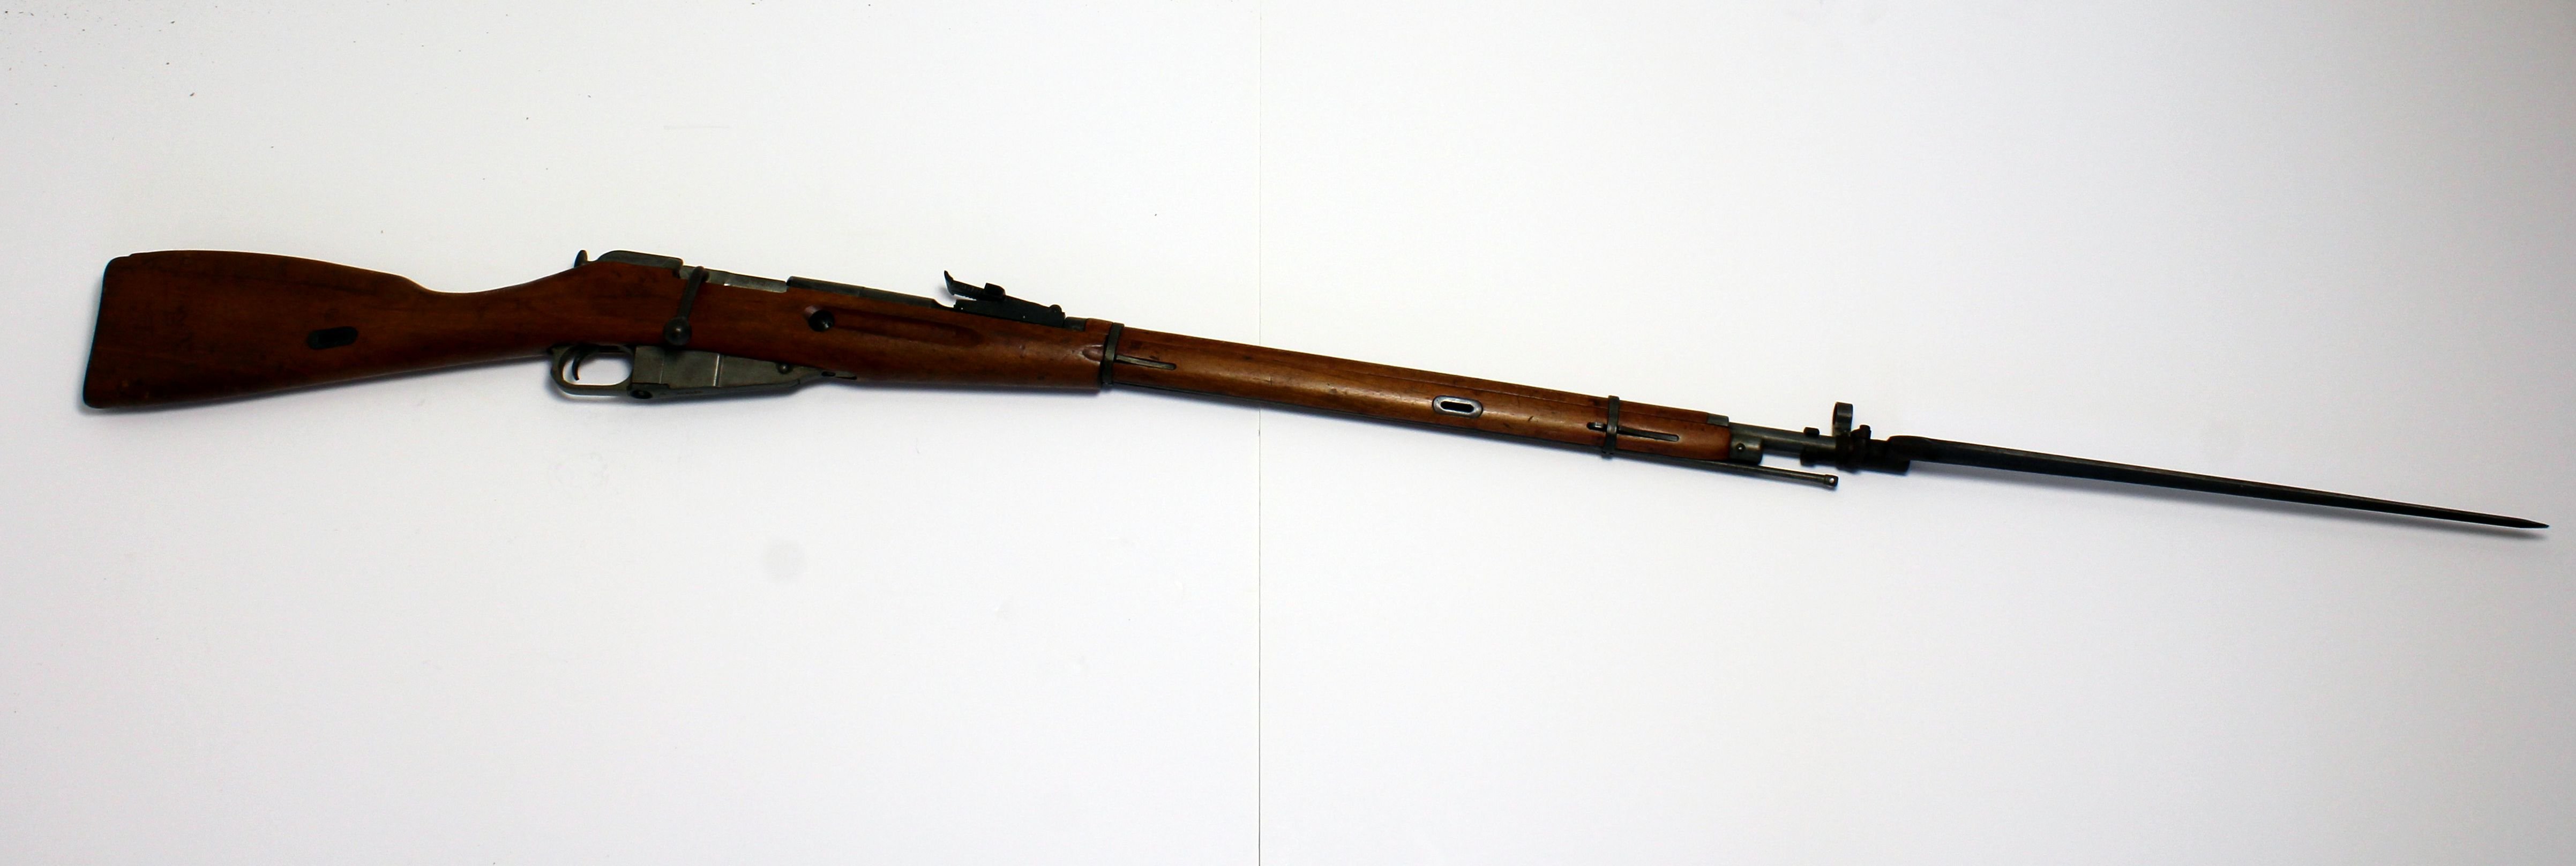 MOSZIN-NAGANT típusú orosz-szovjet hátultöltő, zárdugattyús ismétlőpuska. 1891-ben kezdték el gyártani, majd 1930-ban átalakították a tömegg (Paksi Városi Múzeum - Paksi Képtár CC BY-NC-SA)